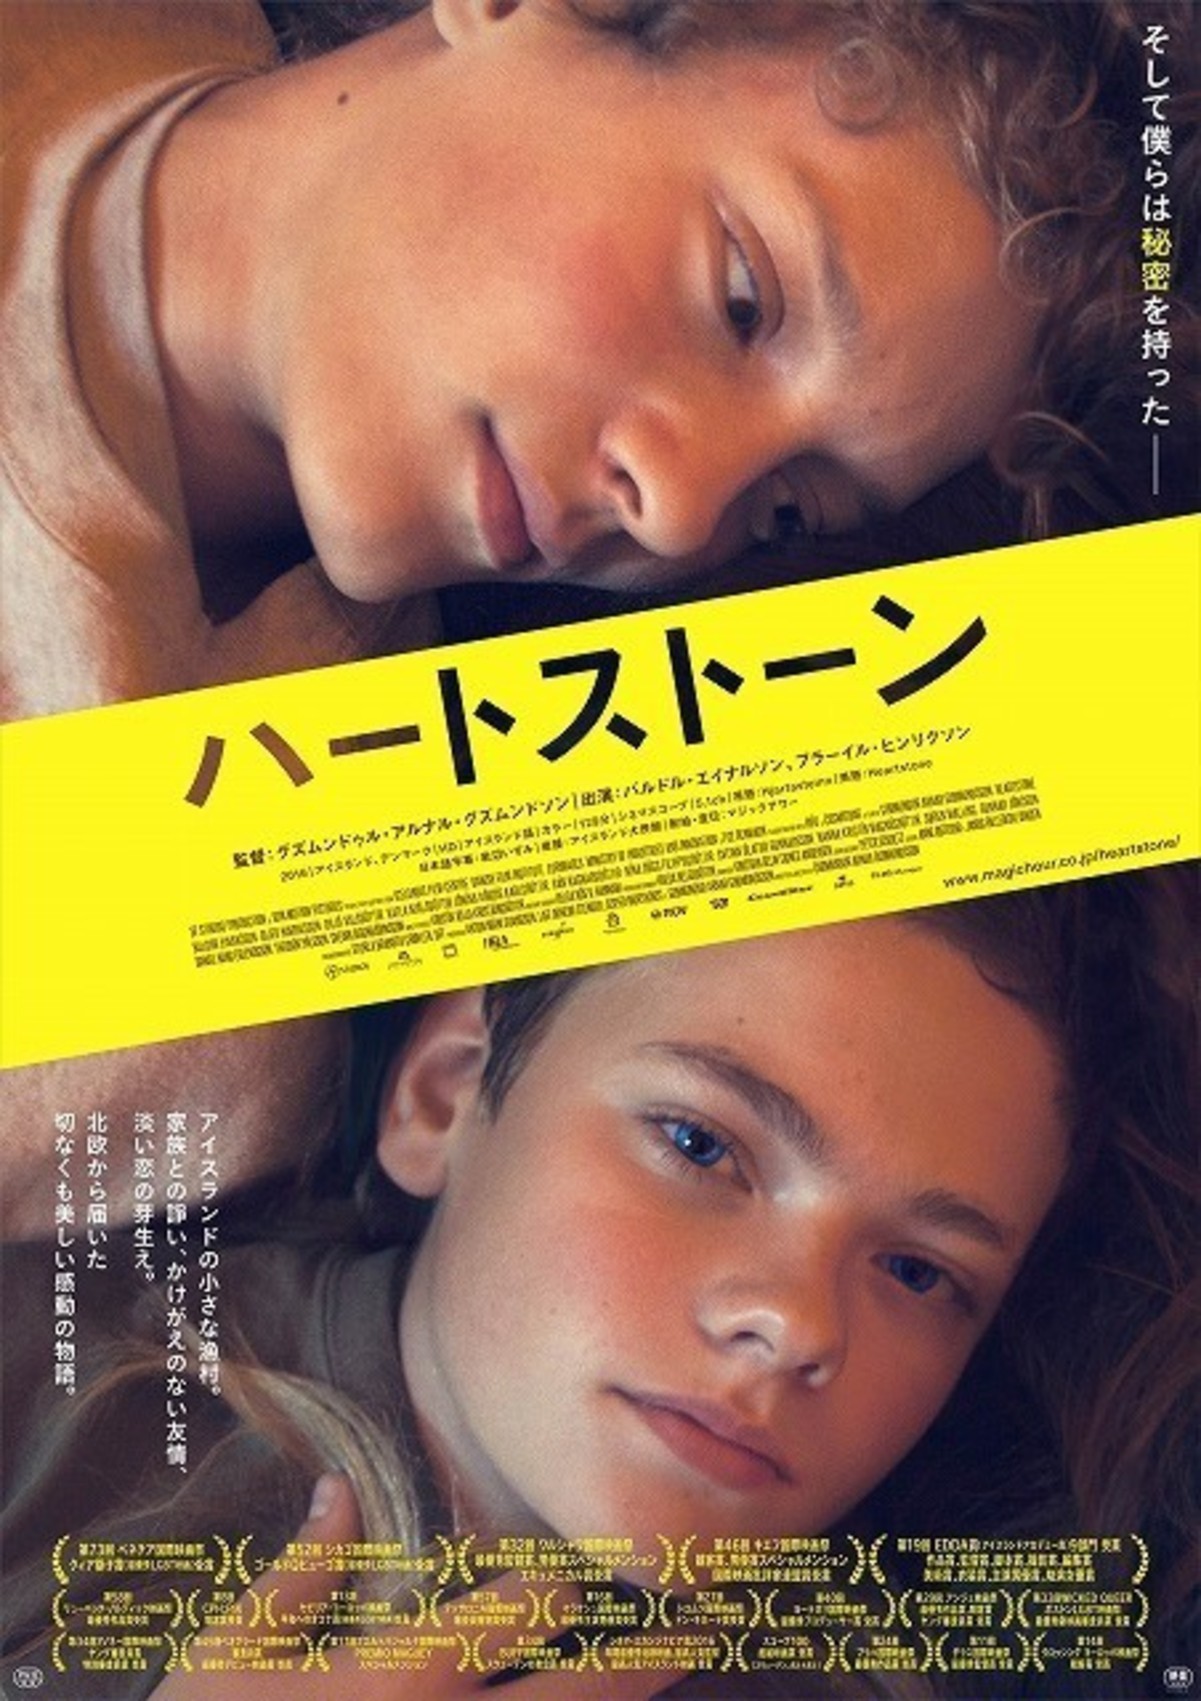 アイスランド発 美少年たちの切なくも美しい青春映画が7月15日公開決定 映画ニュース 映画 Com